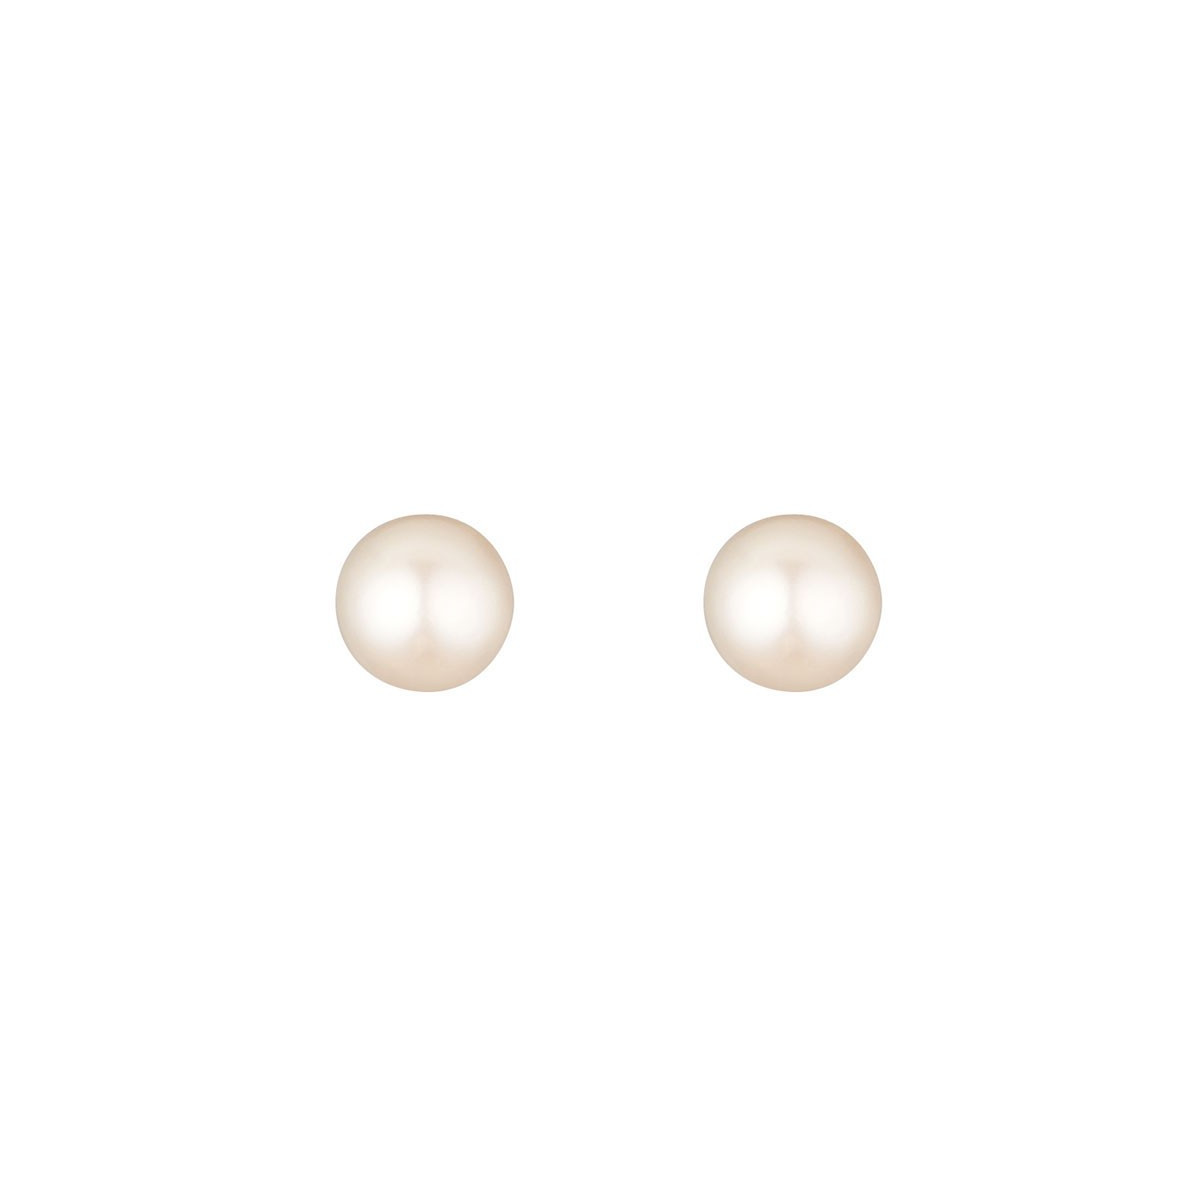 Boucles d'oreilles or jaune et perles de culture "My Pearl"